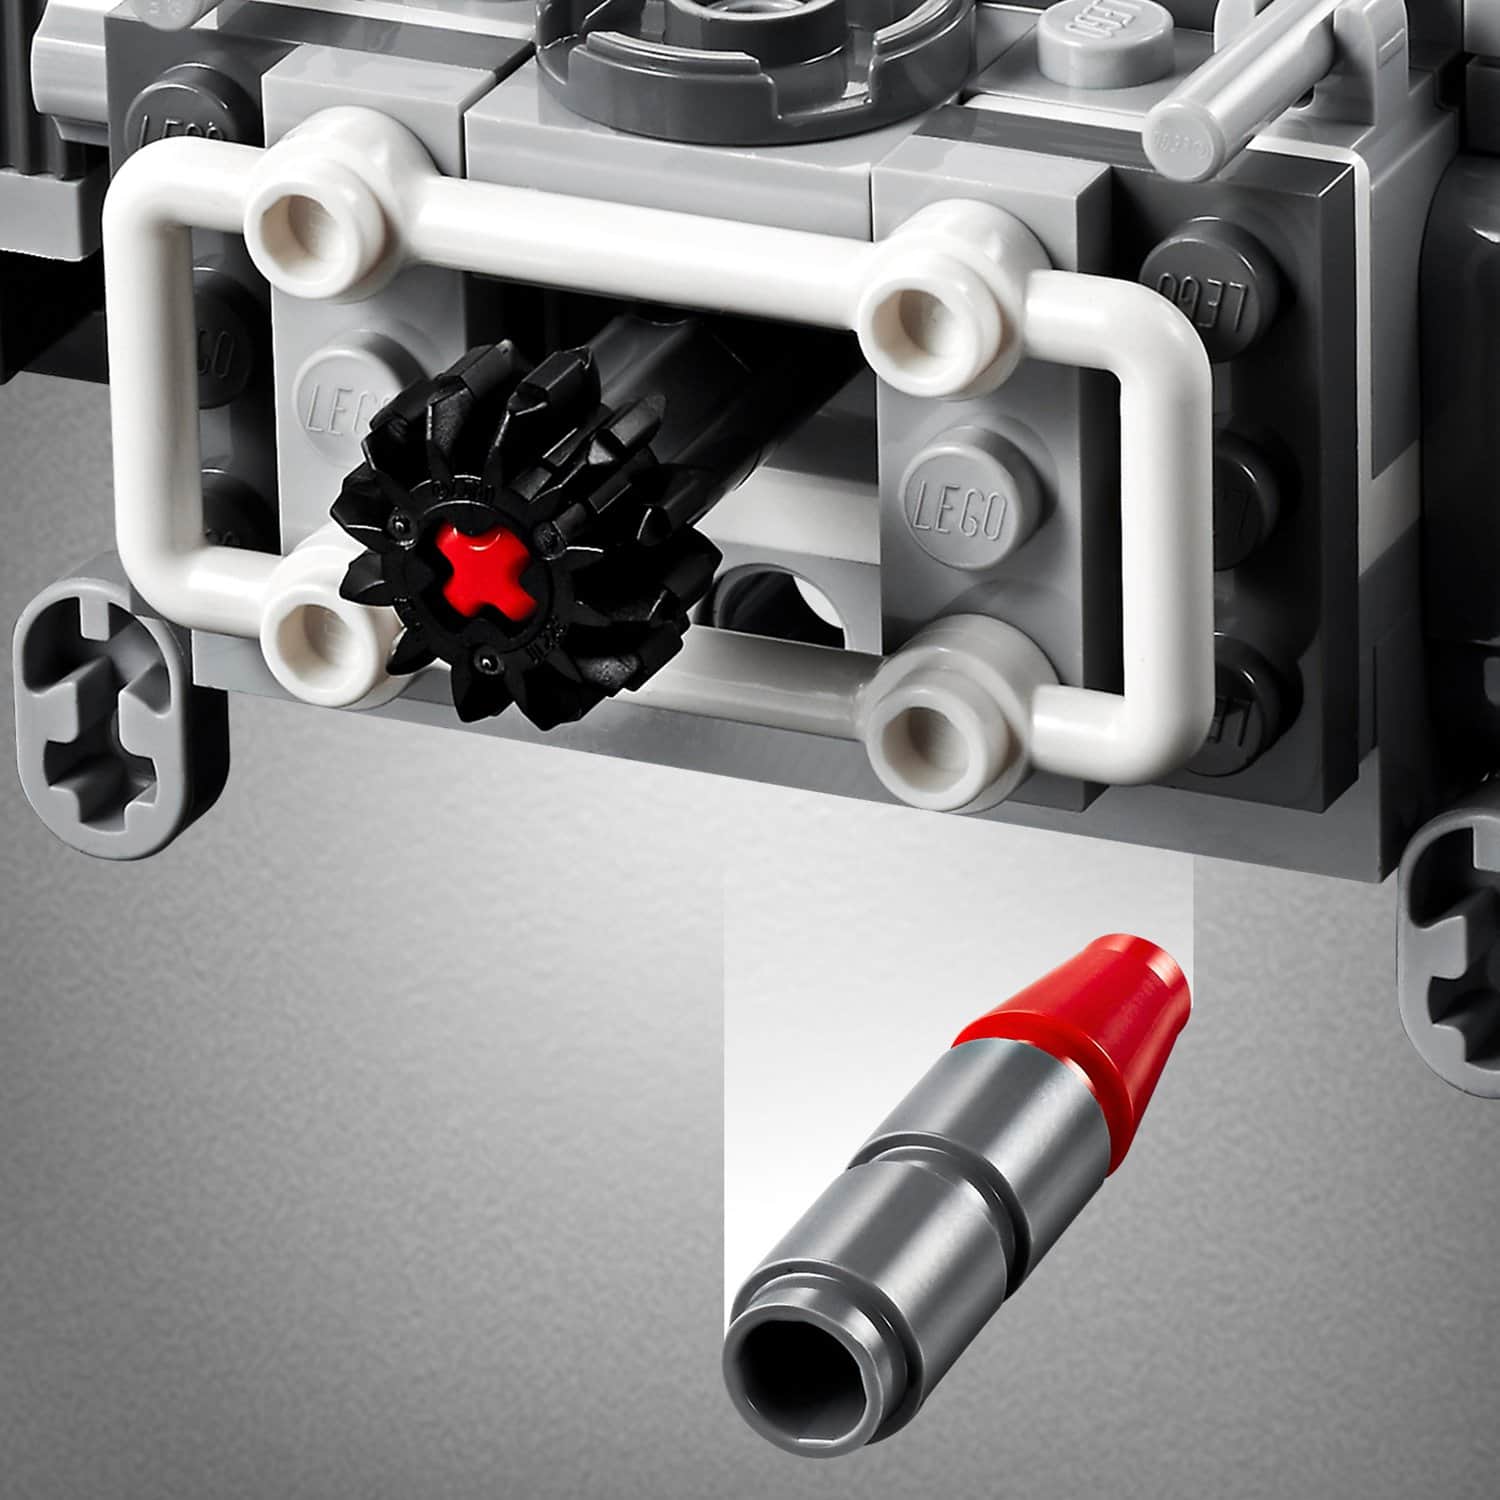 Конструктор LEGO Star Wars 75249 Звёздный истребитель Повстанцев